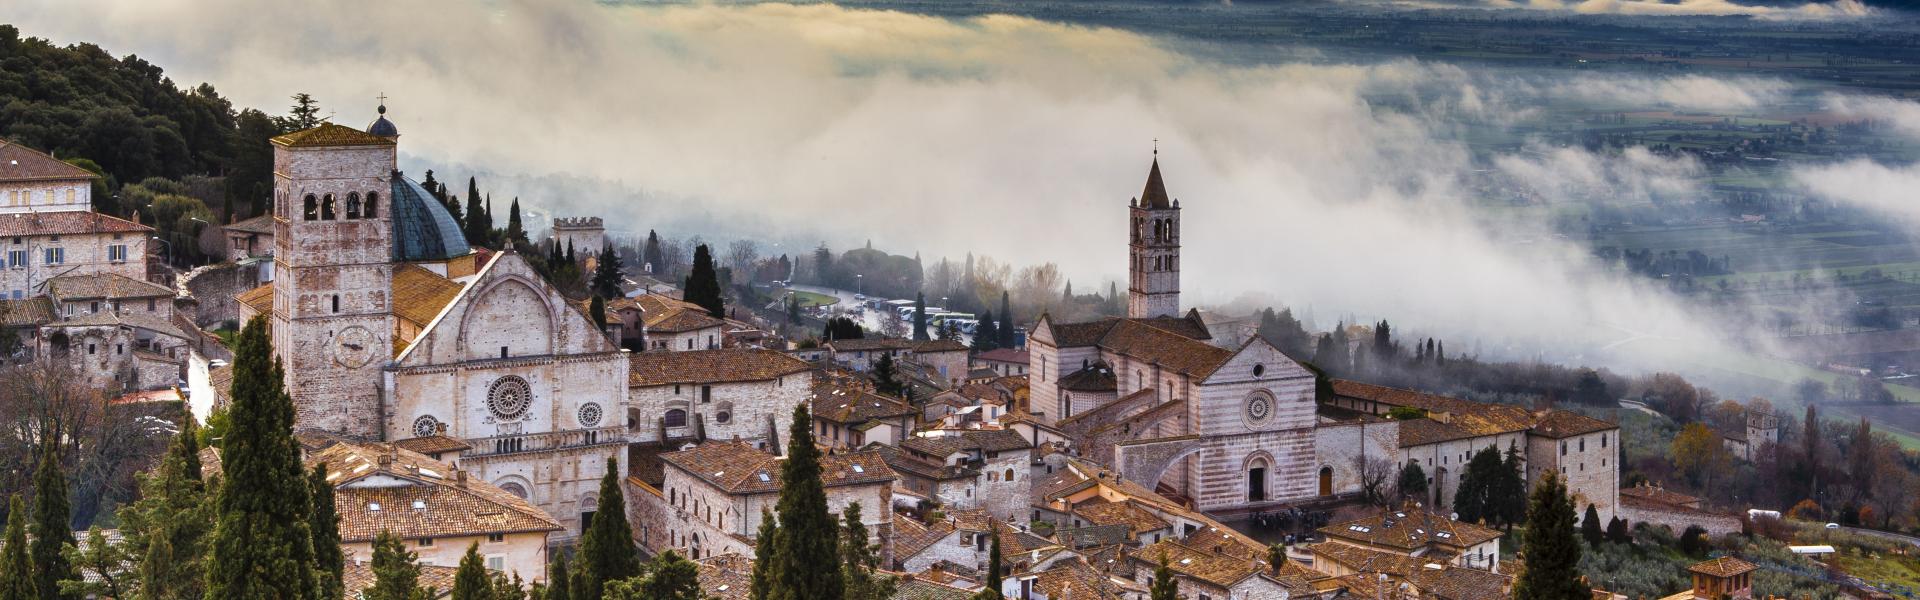 Umbria Scenic View